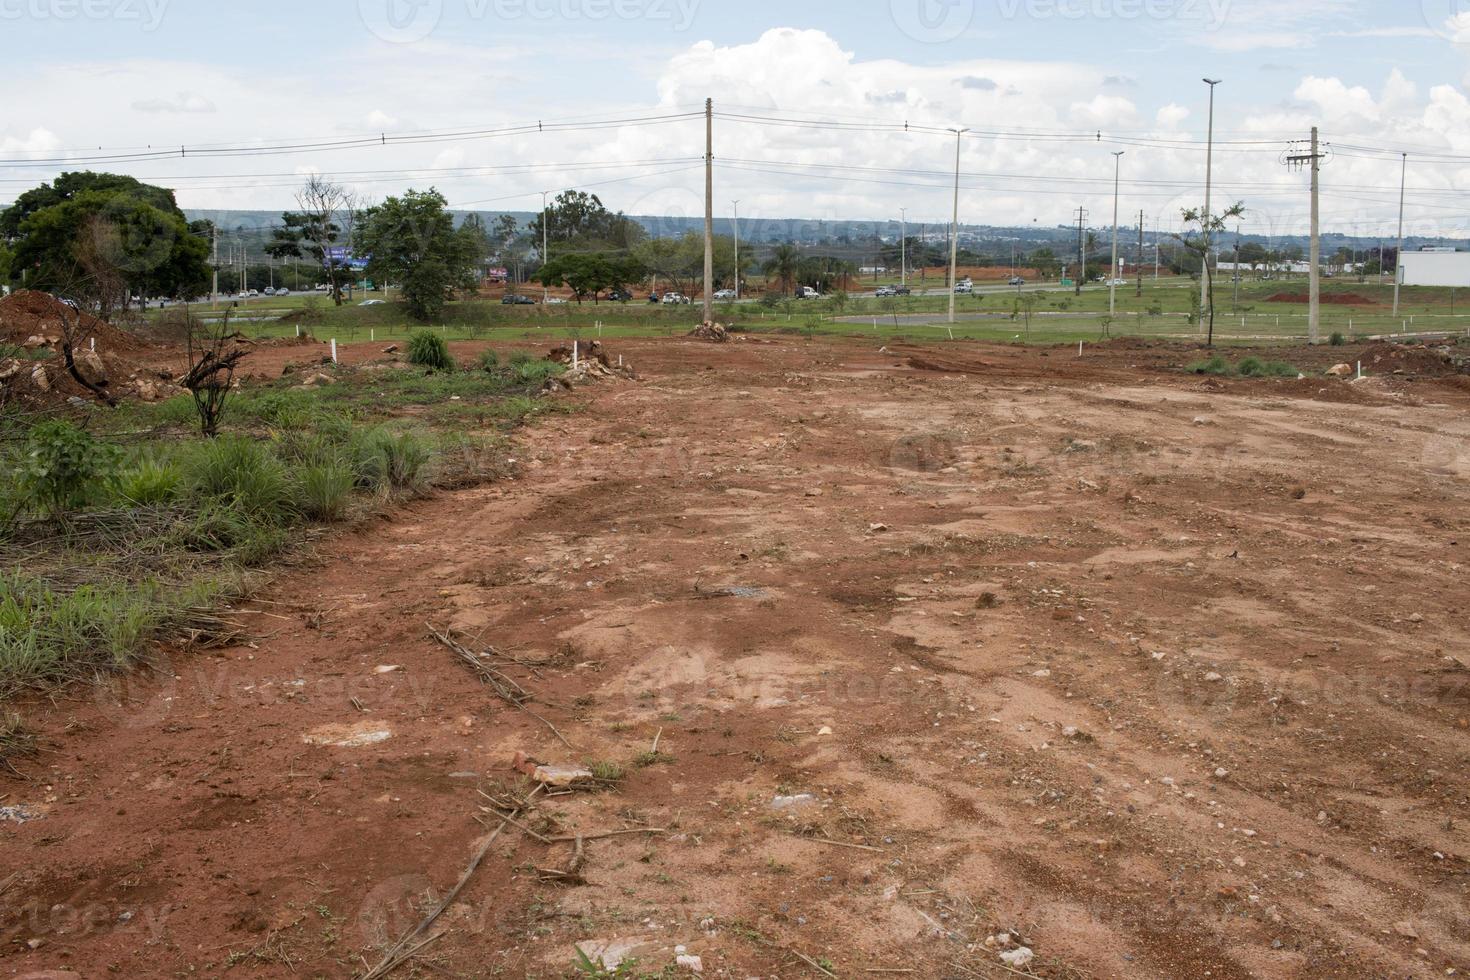 land- wezen gewist uit voor de bouw van een nieuw weg in de Noord West sectie van Brazilië, Brazilië, bekend net zo noroeste foto